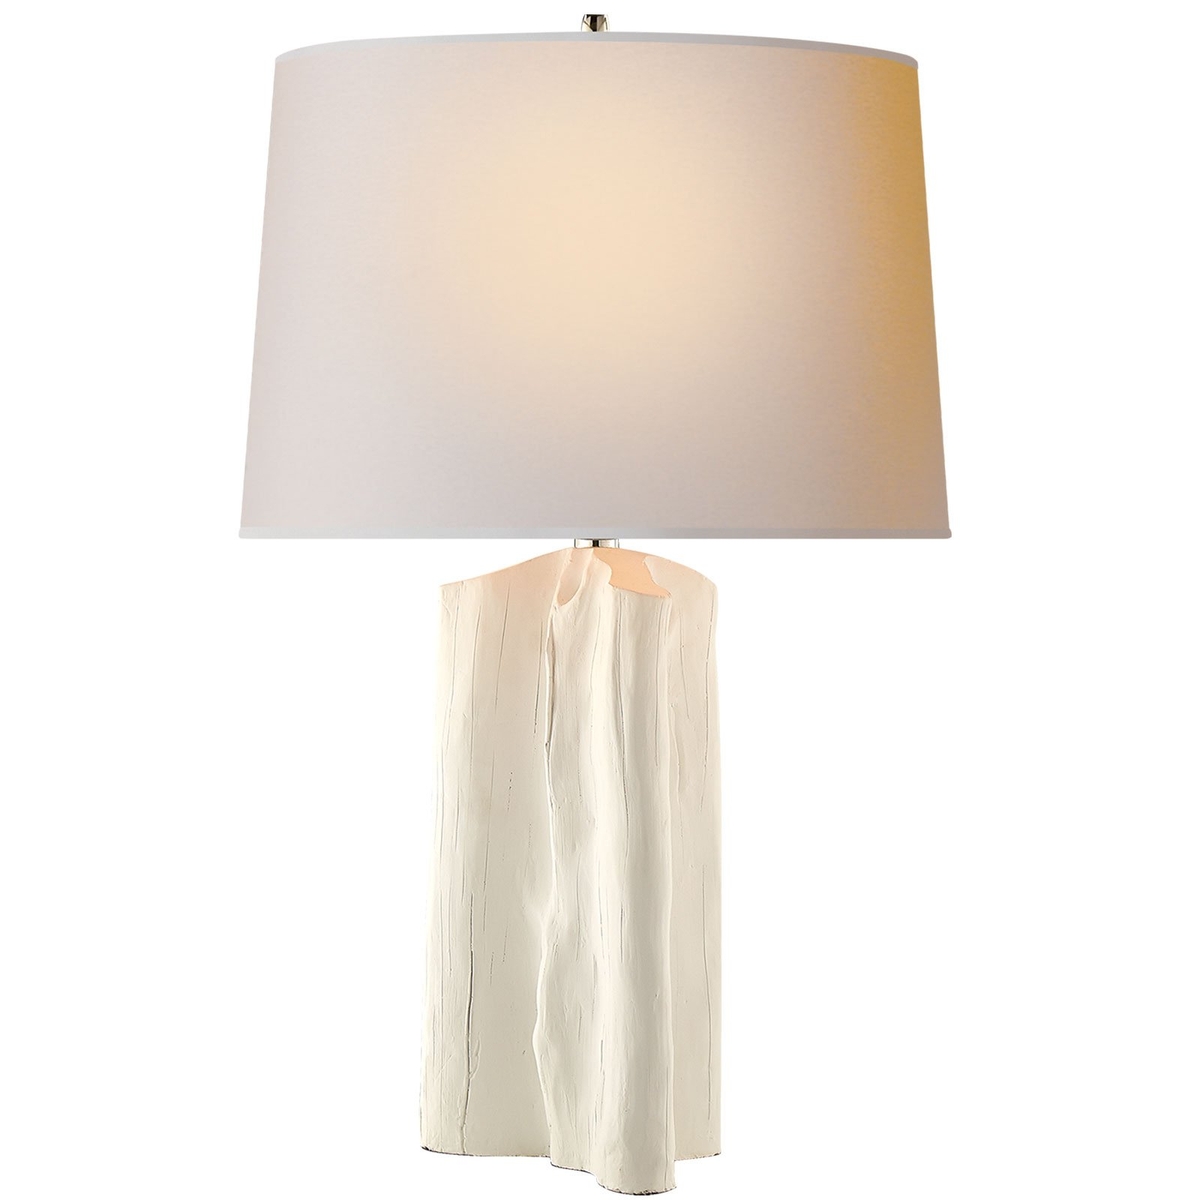 Sierra Table Lamp, Plaster White